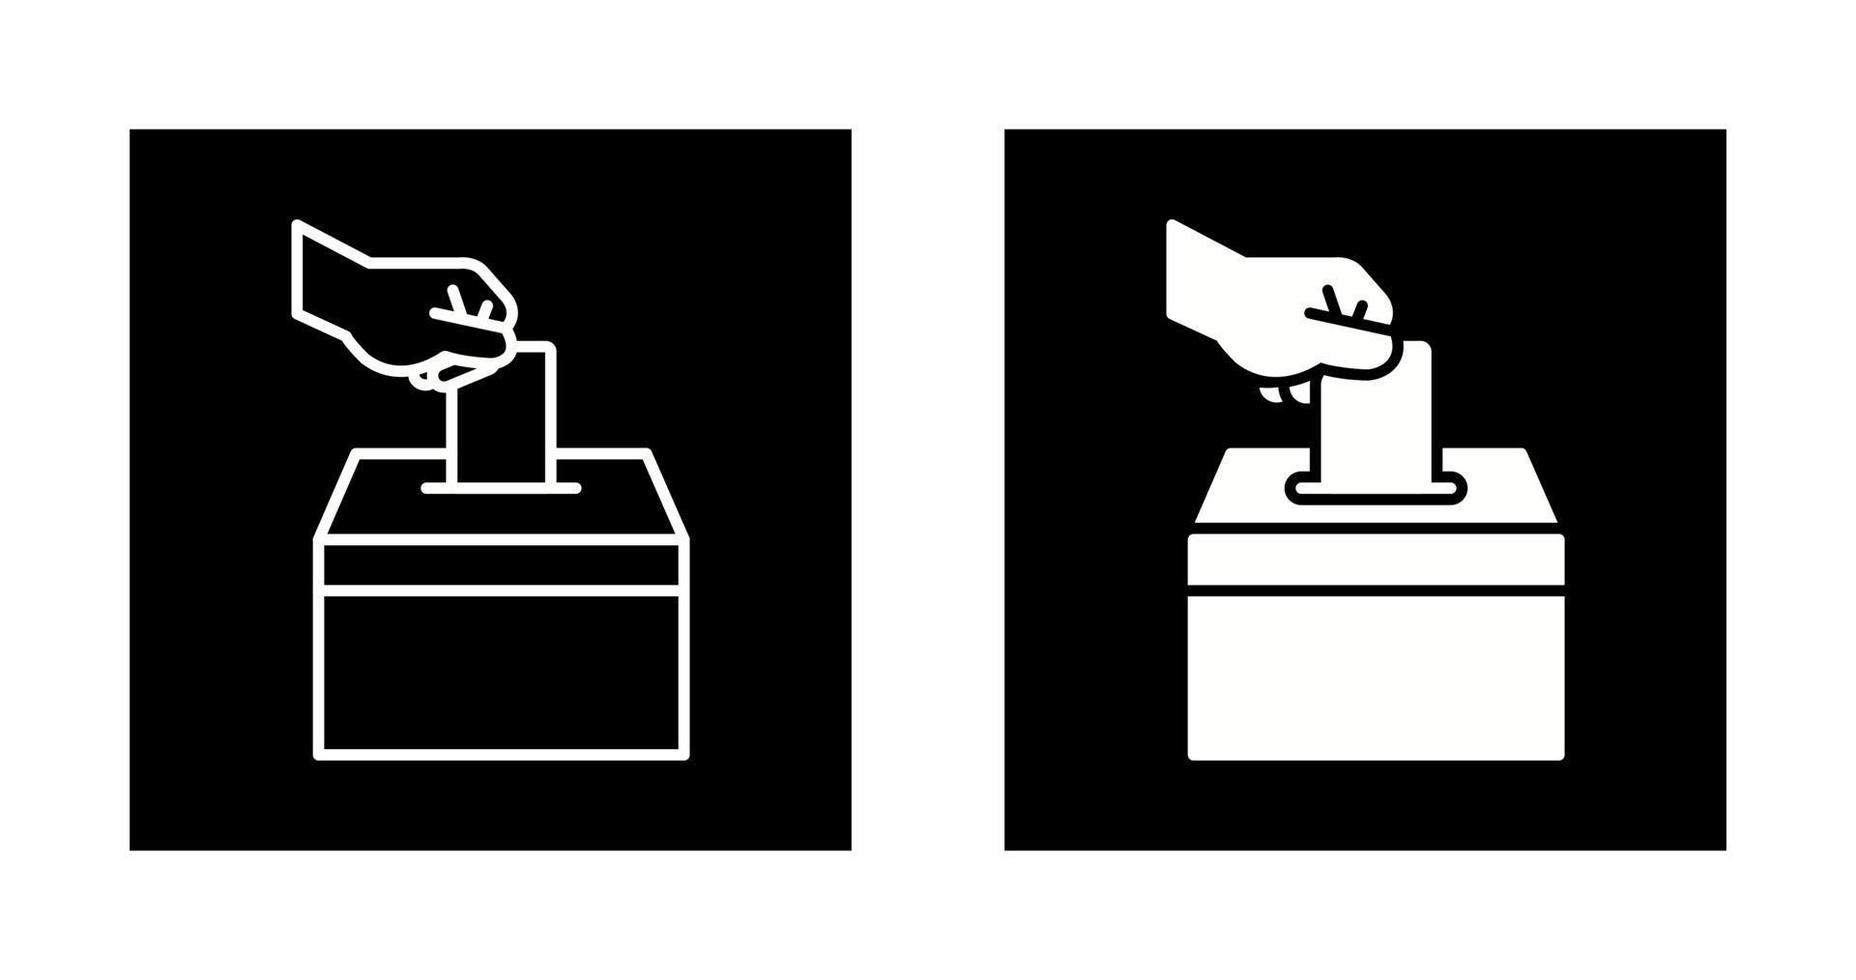 icône de vecteur de vote